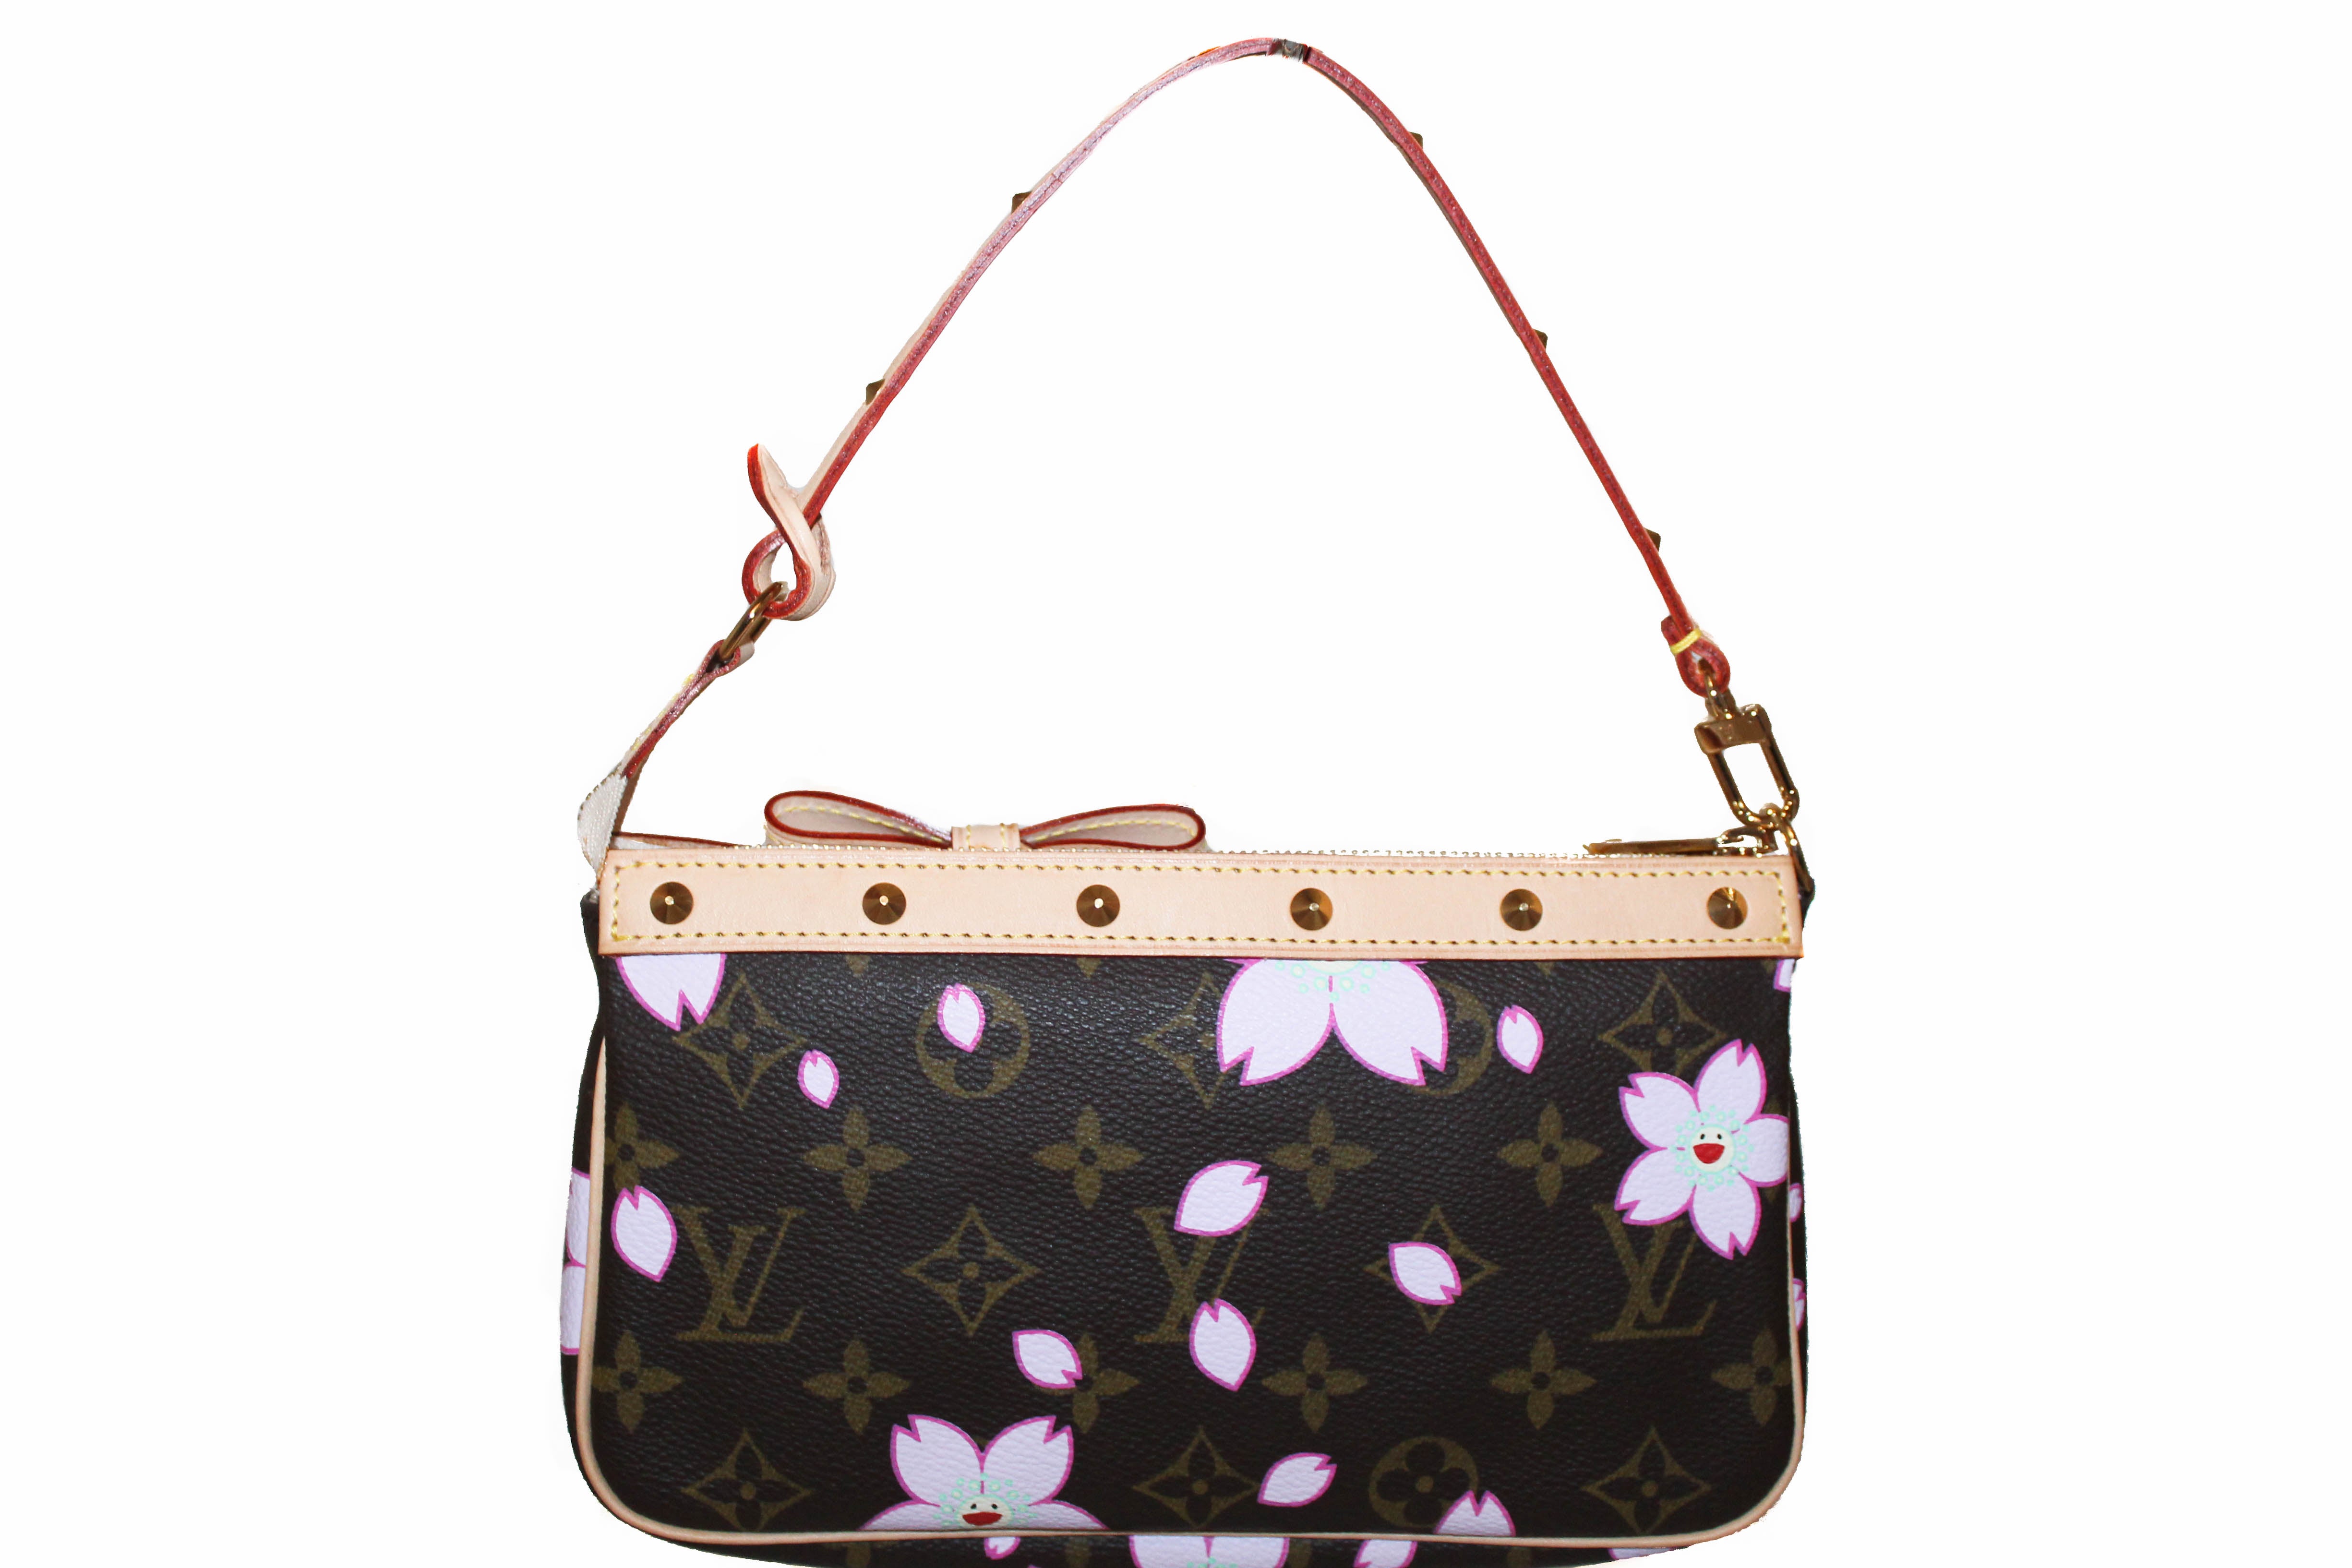 Louis Vuitton Monogram Cherry Blossom Pochette Accessoires Wristlet Pouch Bag 199lvs